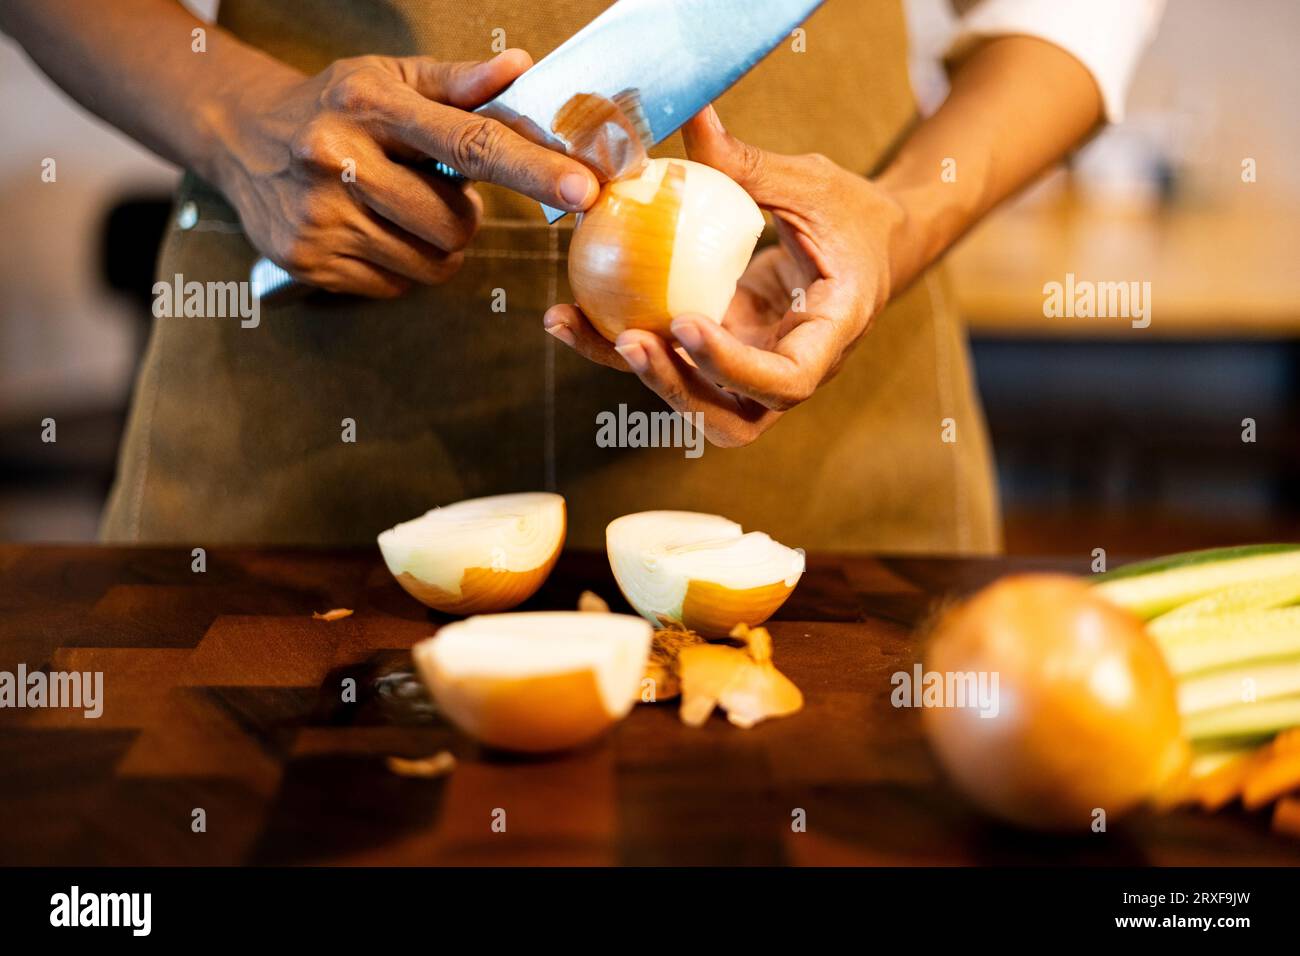 Peeling the Onion, Hintergründe für Werbung und Tapeten in Essen und Kochszenen. Aktuelle Bilder bei Dekorationsideen. Stockfoto